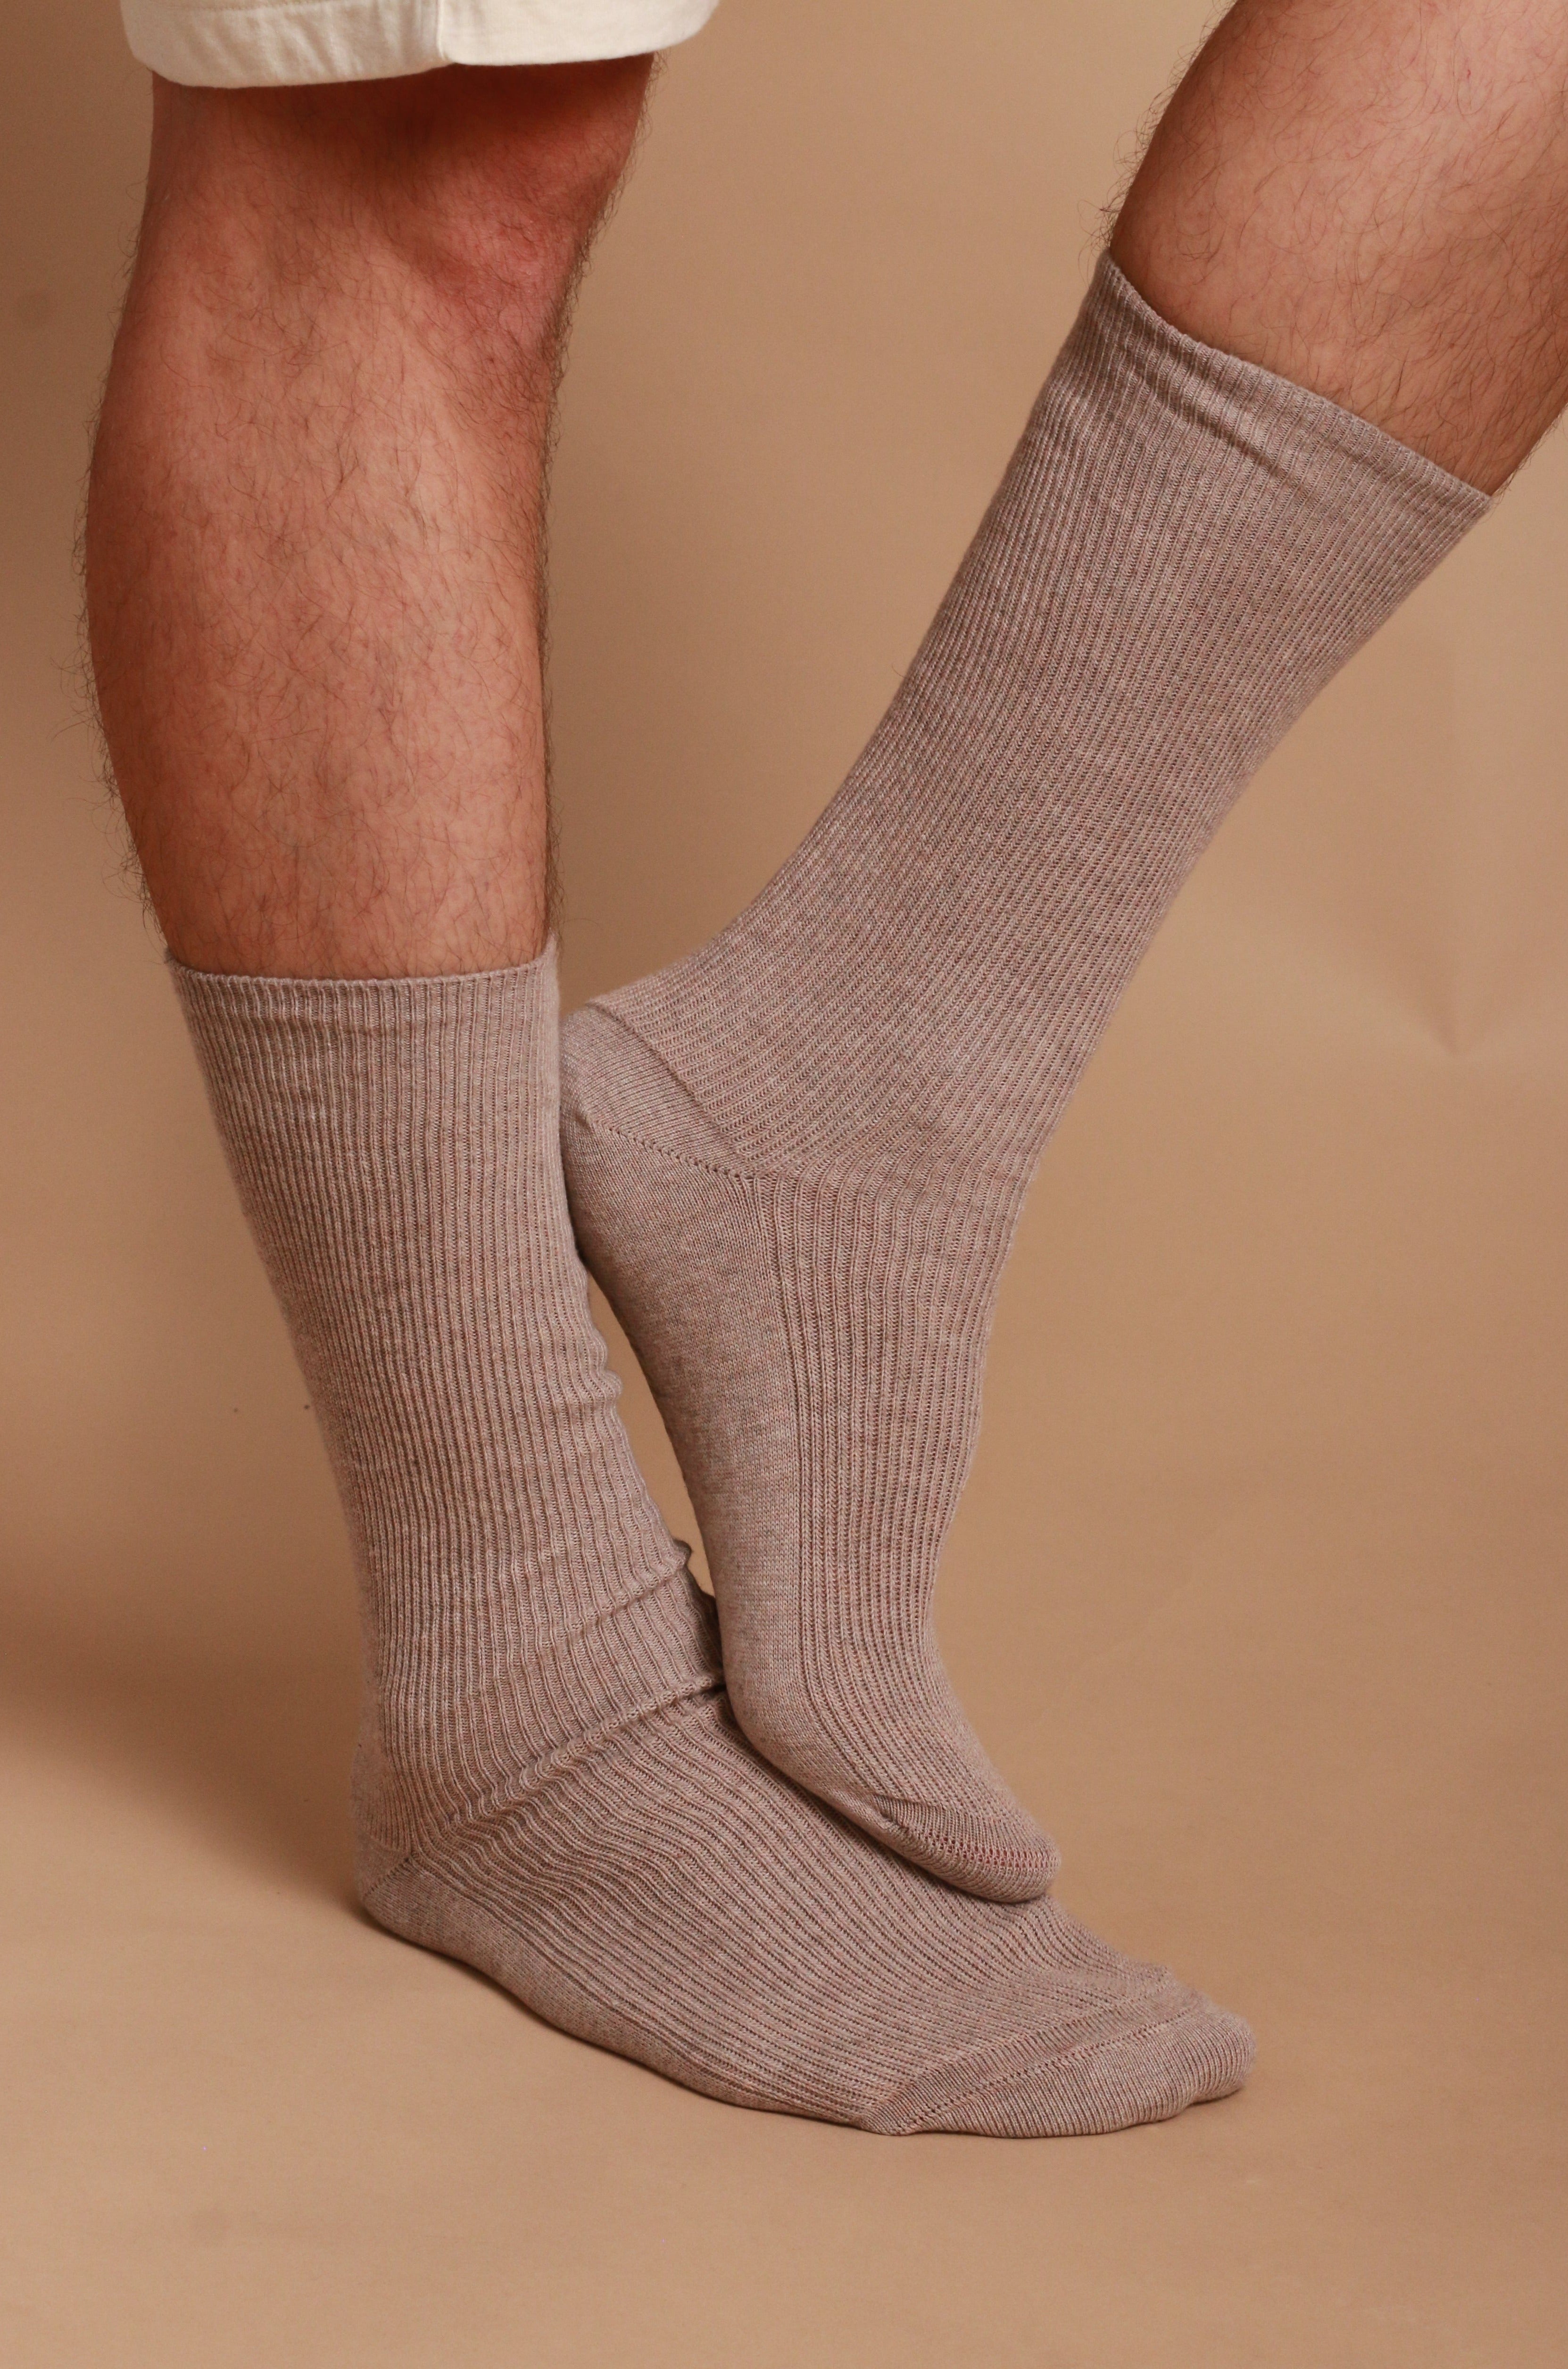 Chaussettes 100% pur coton bio - La chaussette anti-allergies qui ne serre  pas le mollet!